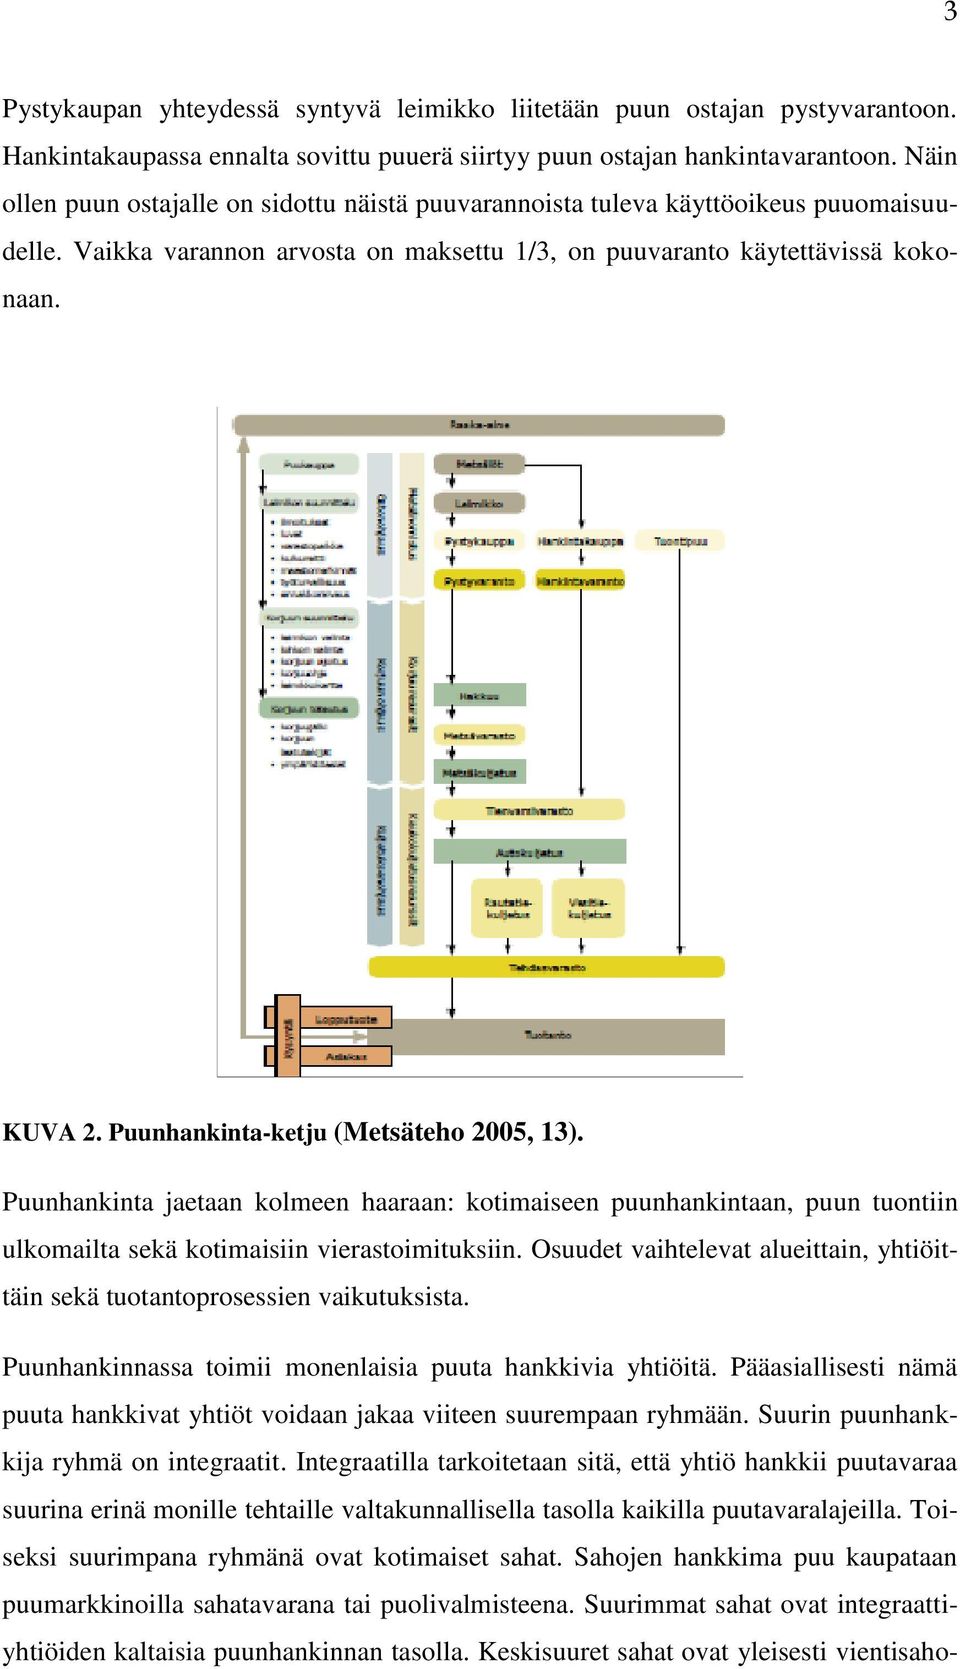 Puunhankinta-ketju (Metsäteho 2005, 13). Puunhankinta jaetaan kolmeen haaraan: kotimaiseen puunhankintaan, puun tuontiin ulkomailta sekä kotimaisiin vierastoimituksiin.